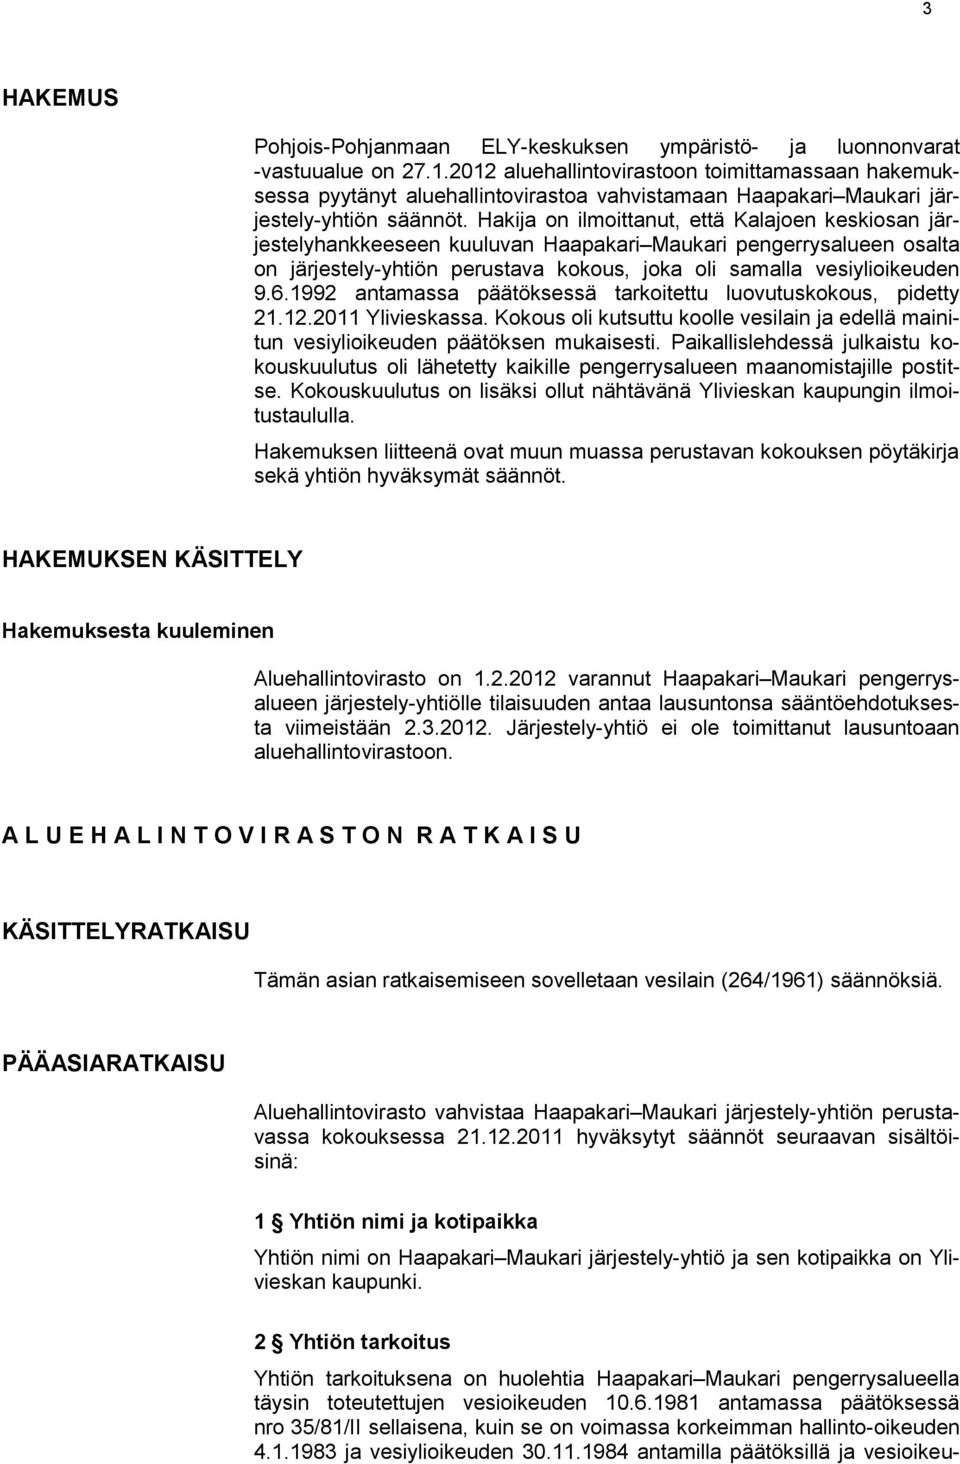 Hakija on ilmoittanut, että Kalajoen keskiosan järjestelyhankkeeseen kuuluvan Haapakari Maukari pengerrysalueen osalta on järjestely-yhtiön perustava kokous, joka oli samalla vesiylioikeuden 9.6.